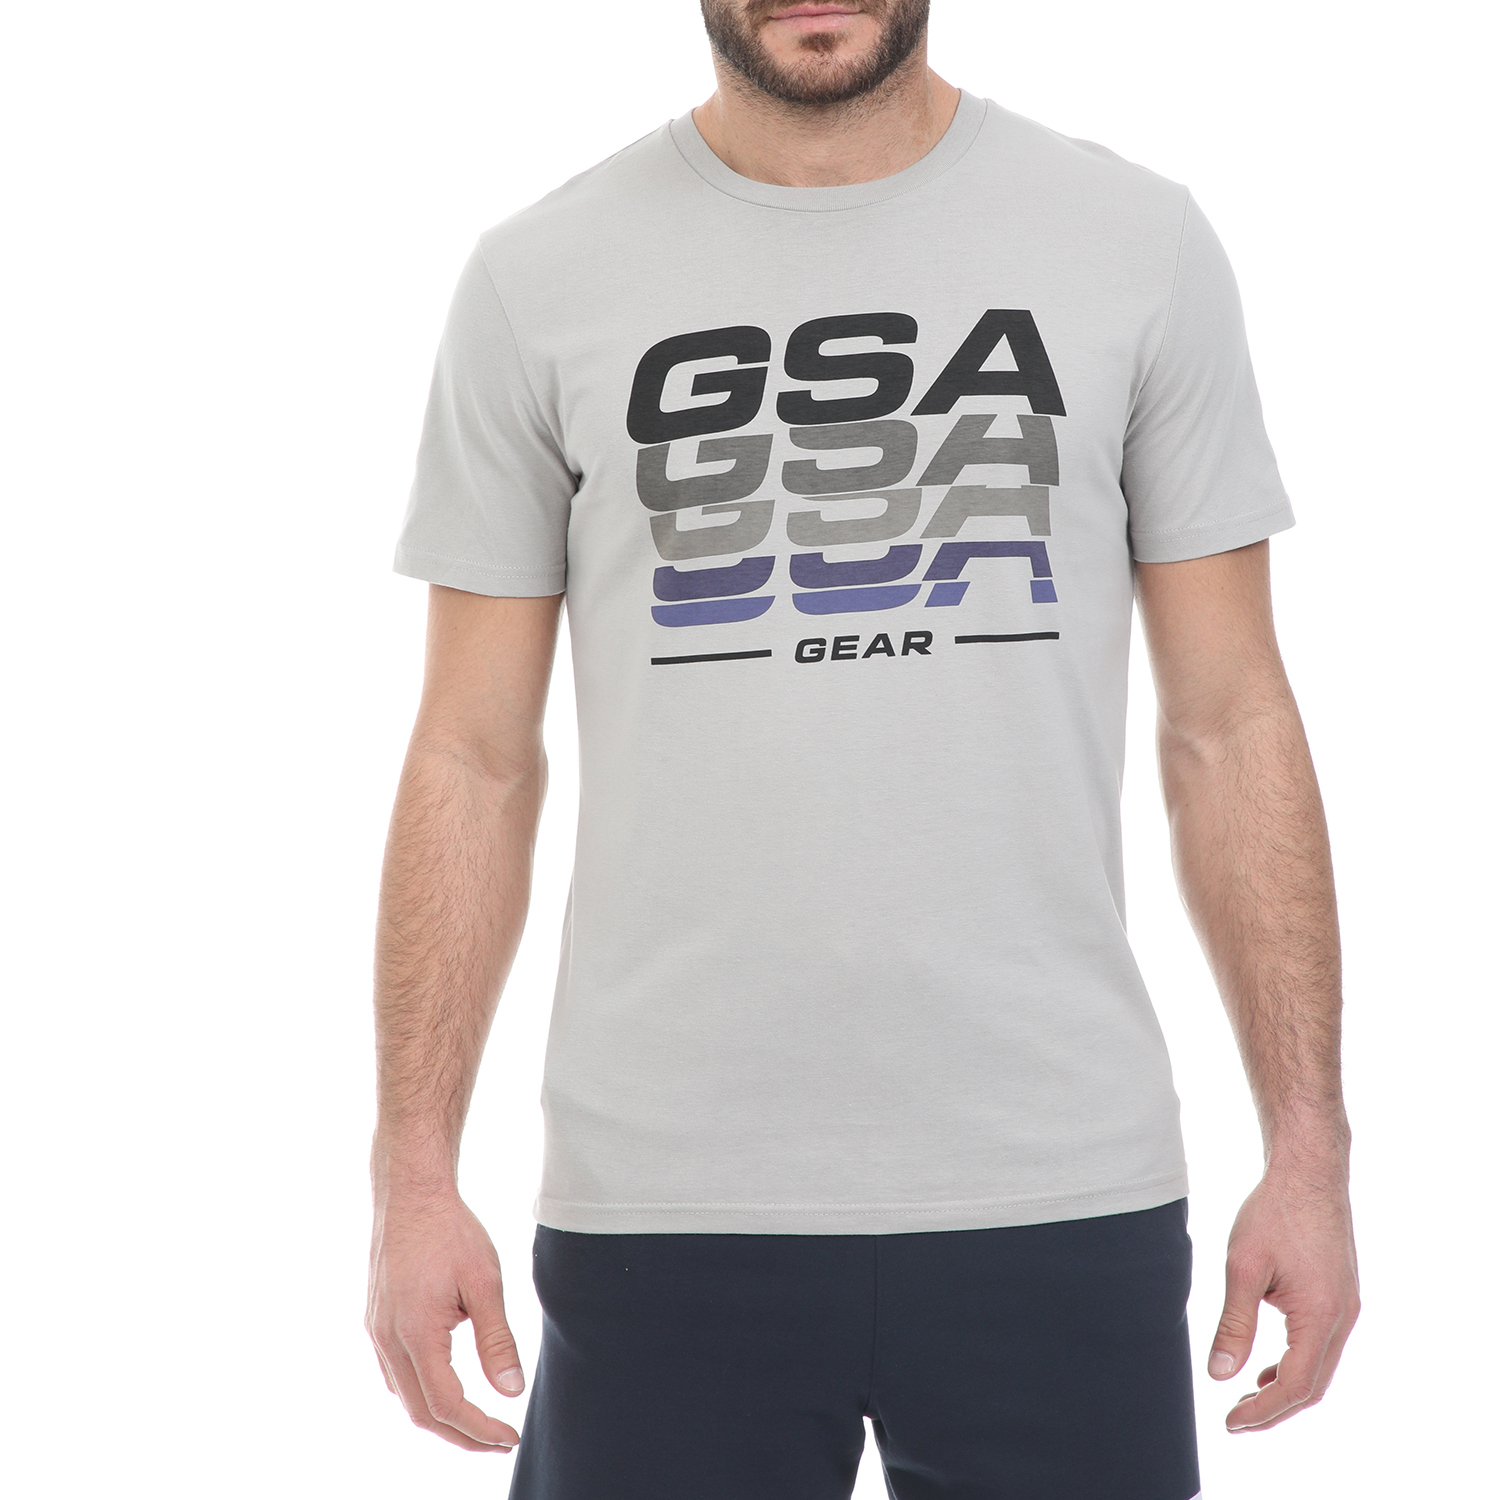 Ανδρικά/Ρούχα/Μπλούζες/Κοντομάνικες GSA - Ανδρικό t-shirt GSA ORGANIC PLUS γκρι